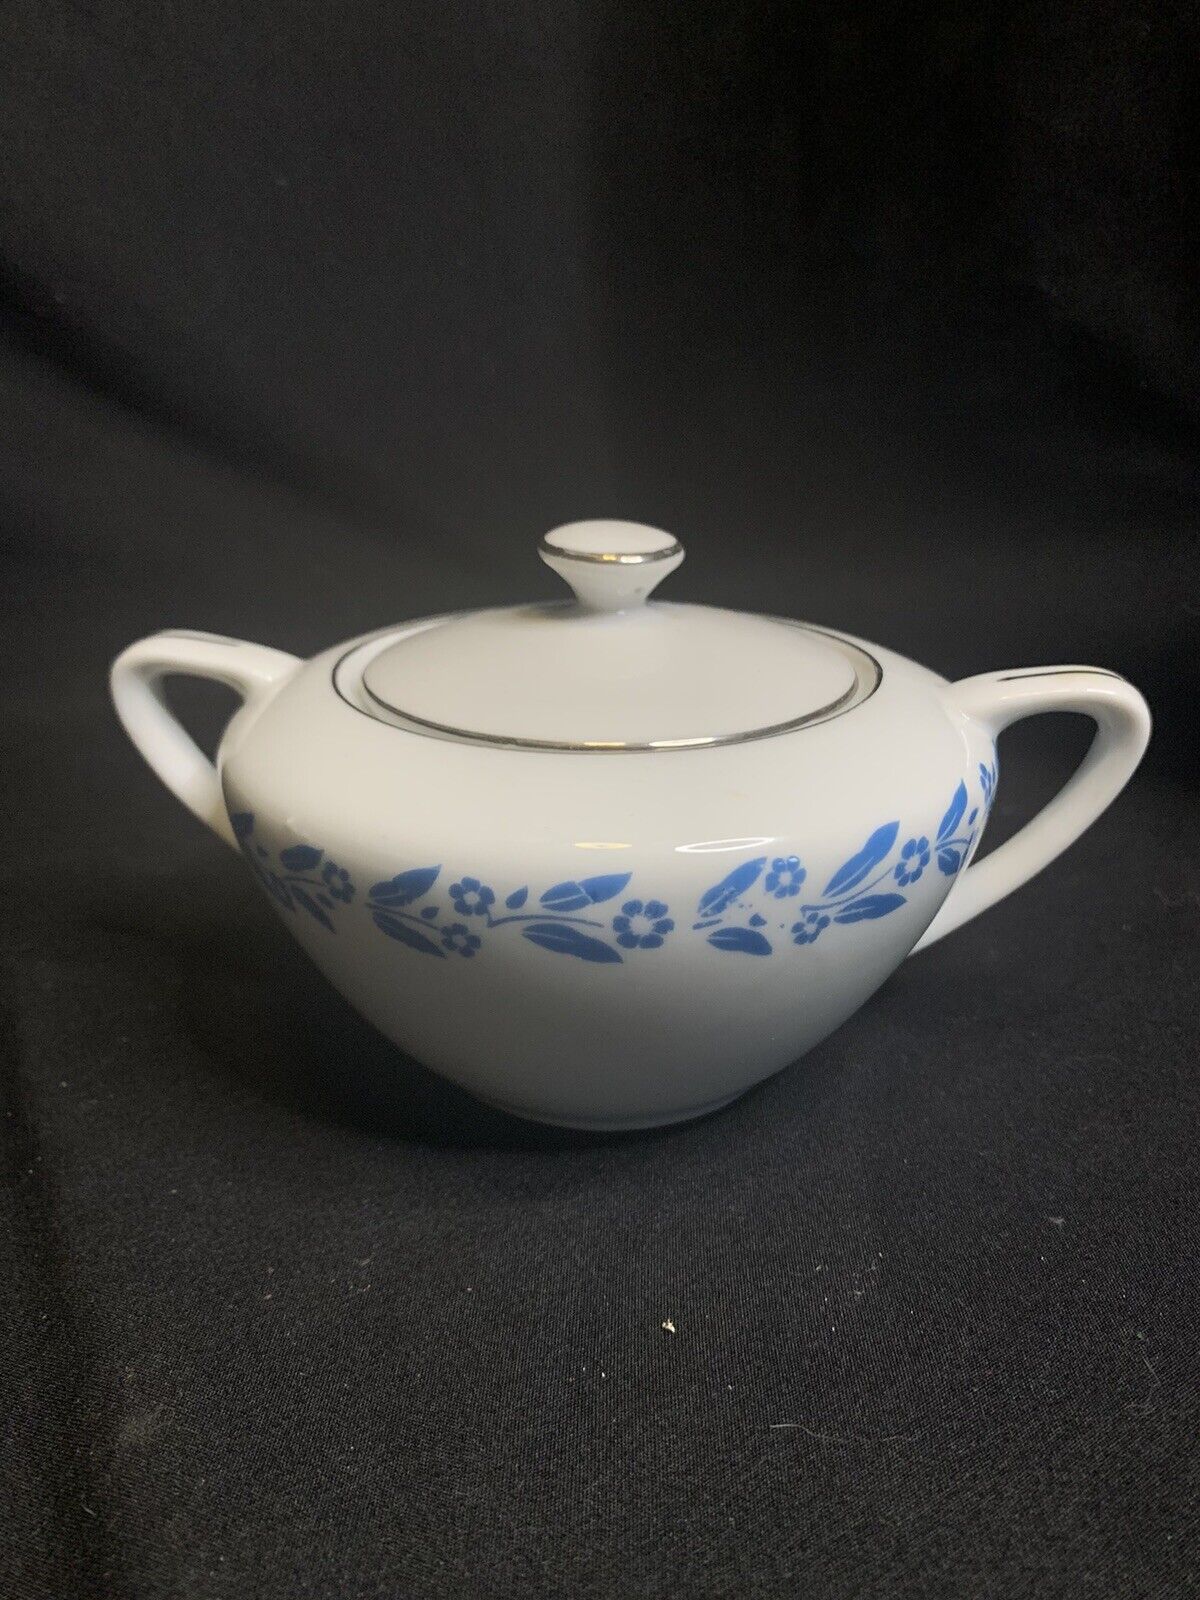 VINTAGE “Symphony in Blue” Fine China Sugar Bowl and Creamer Porcelain (Japan)